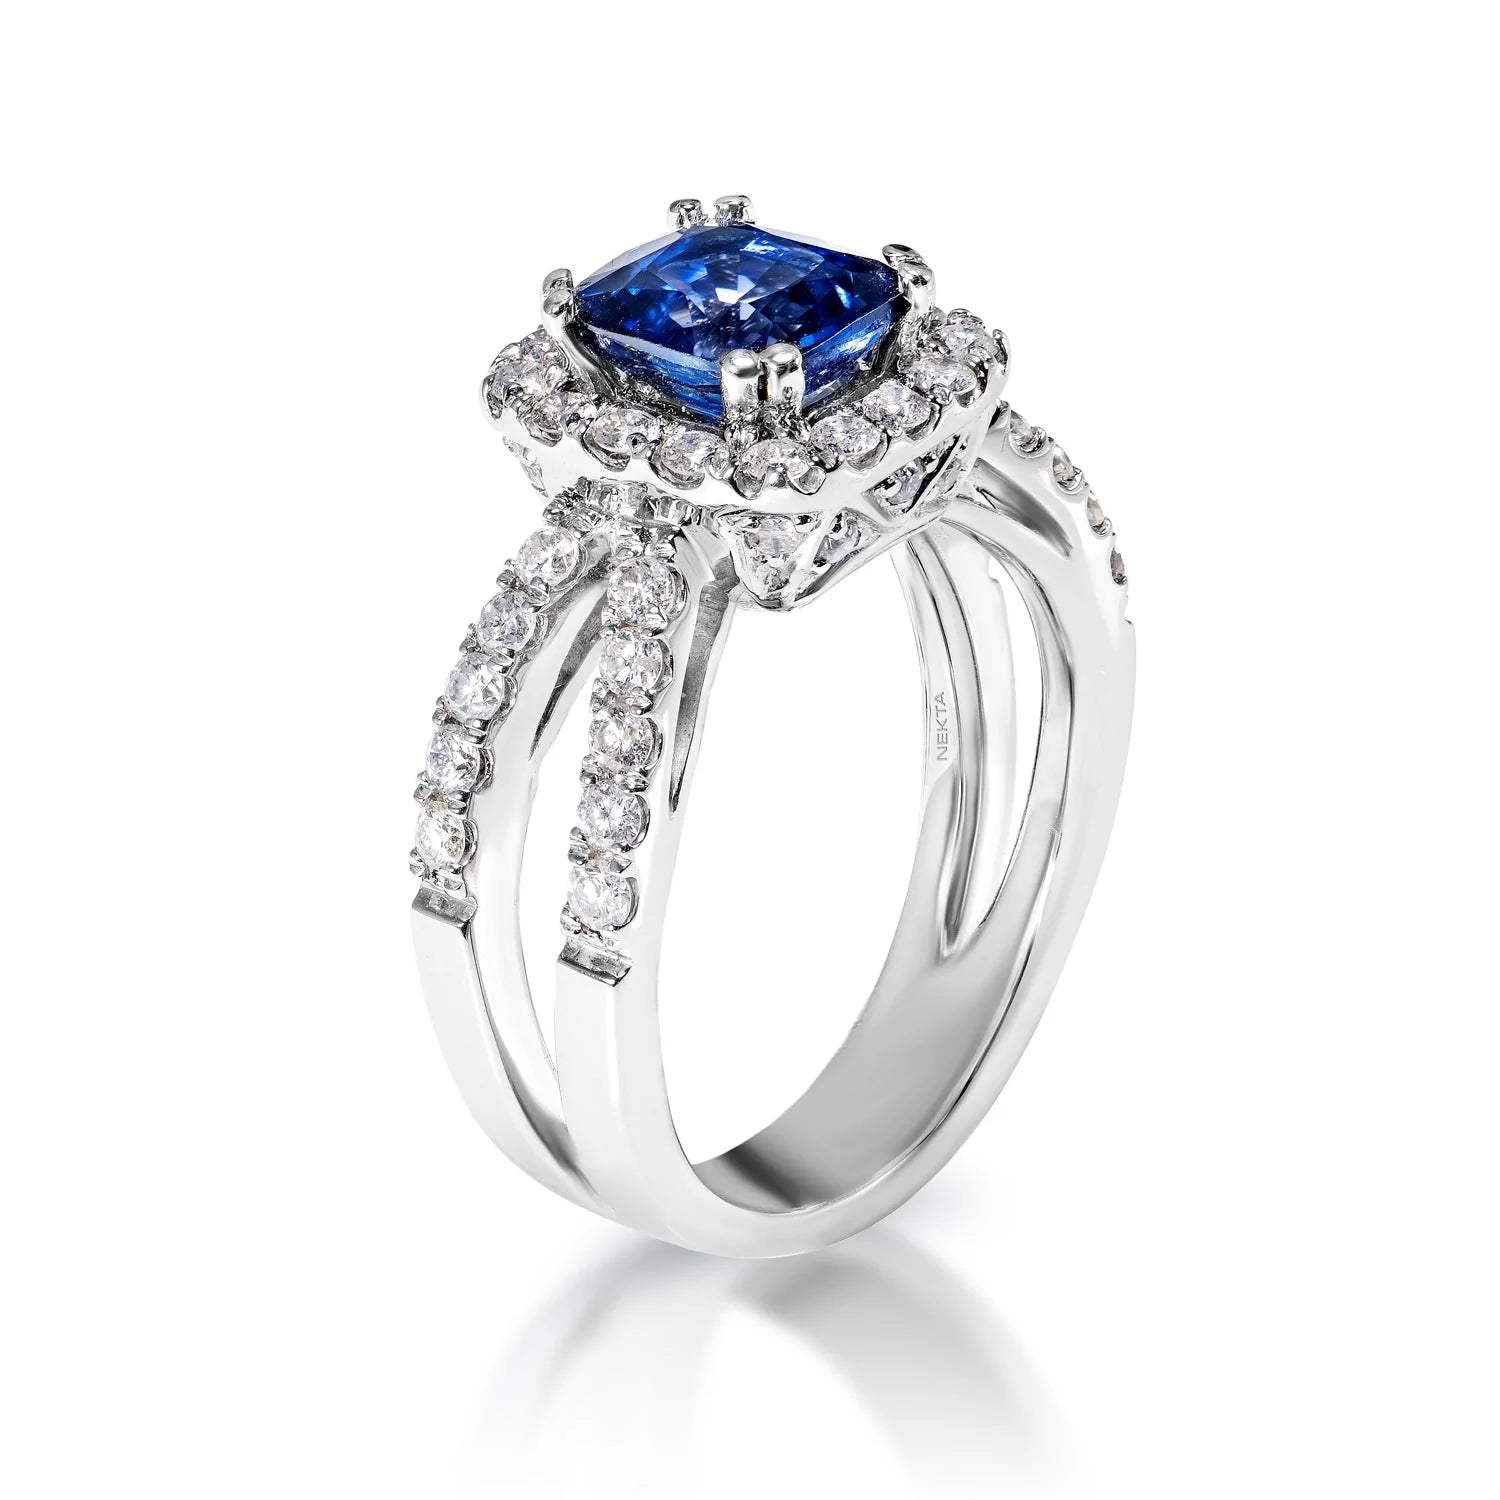 Hayden 3 Carat Cushion Cut Blue Sapphire Ring in 14 Karat White Gold Side View